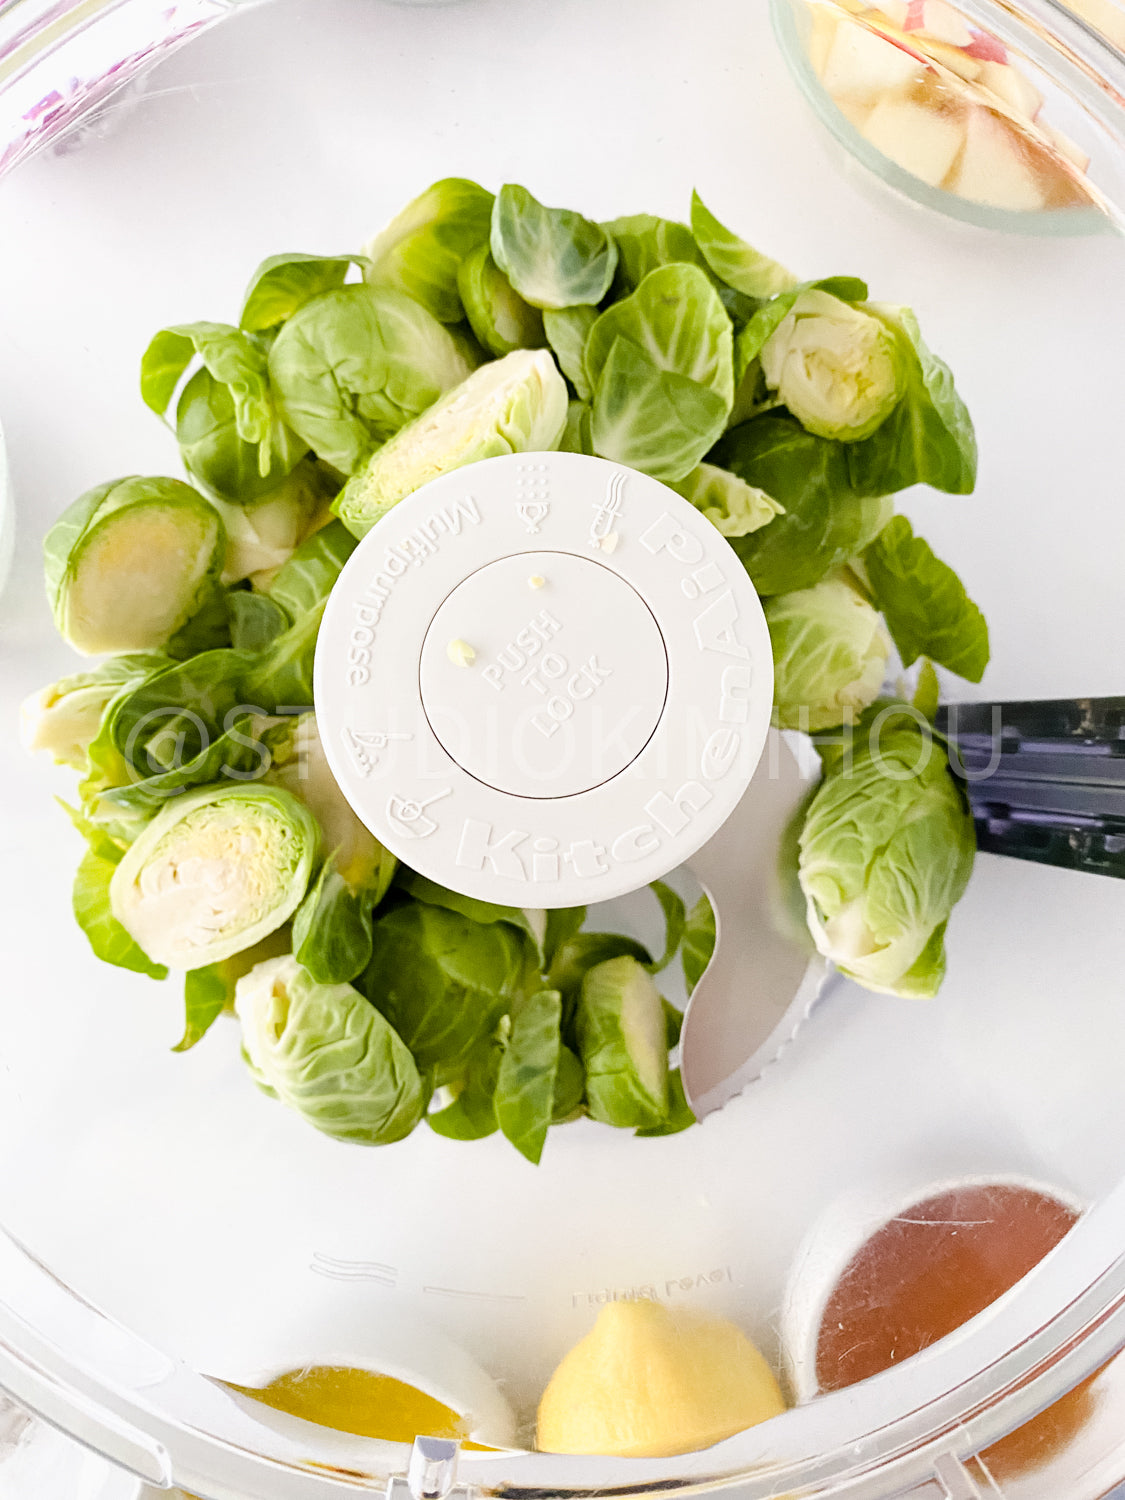 PLR - Brussel Sprouts Salad w Maple Vinaigrette